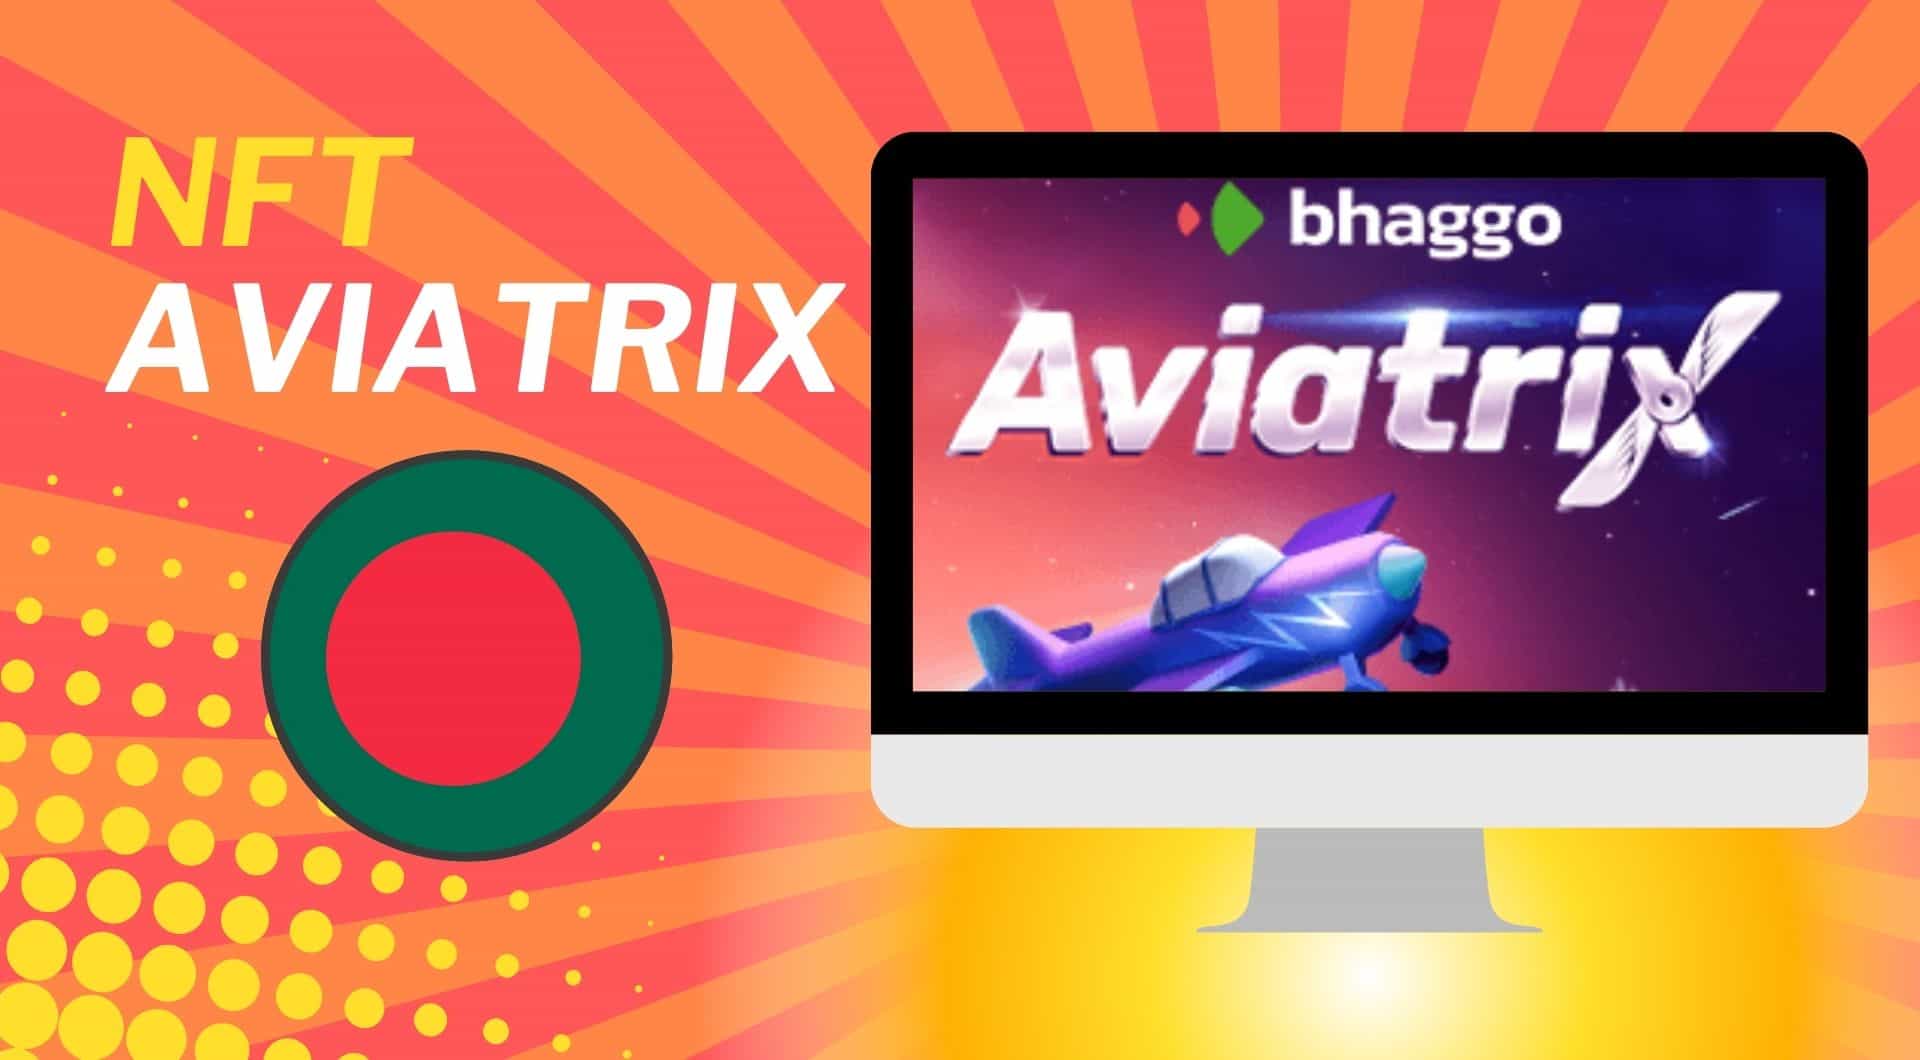 NFT Aviatrix Bhaggo online casino game review